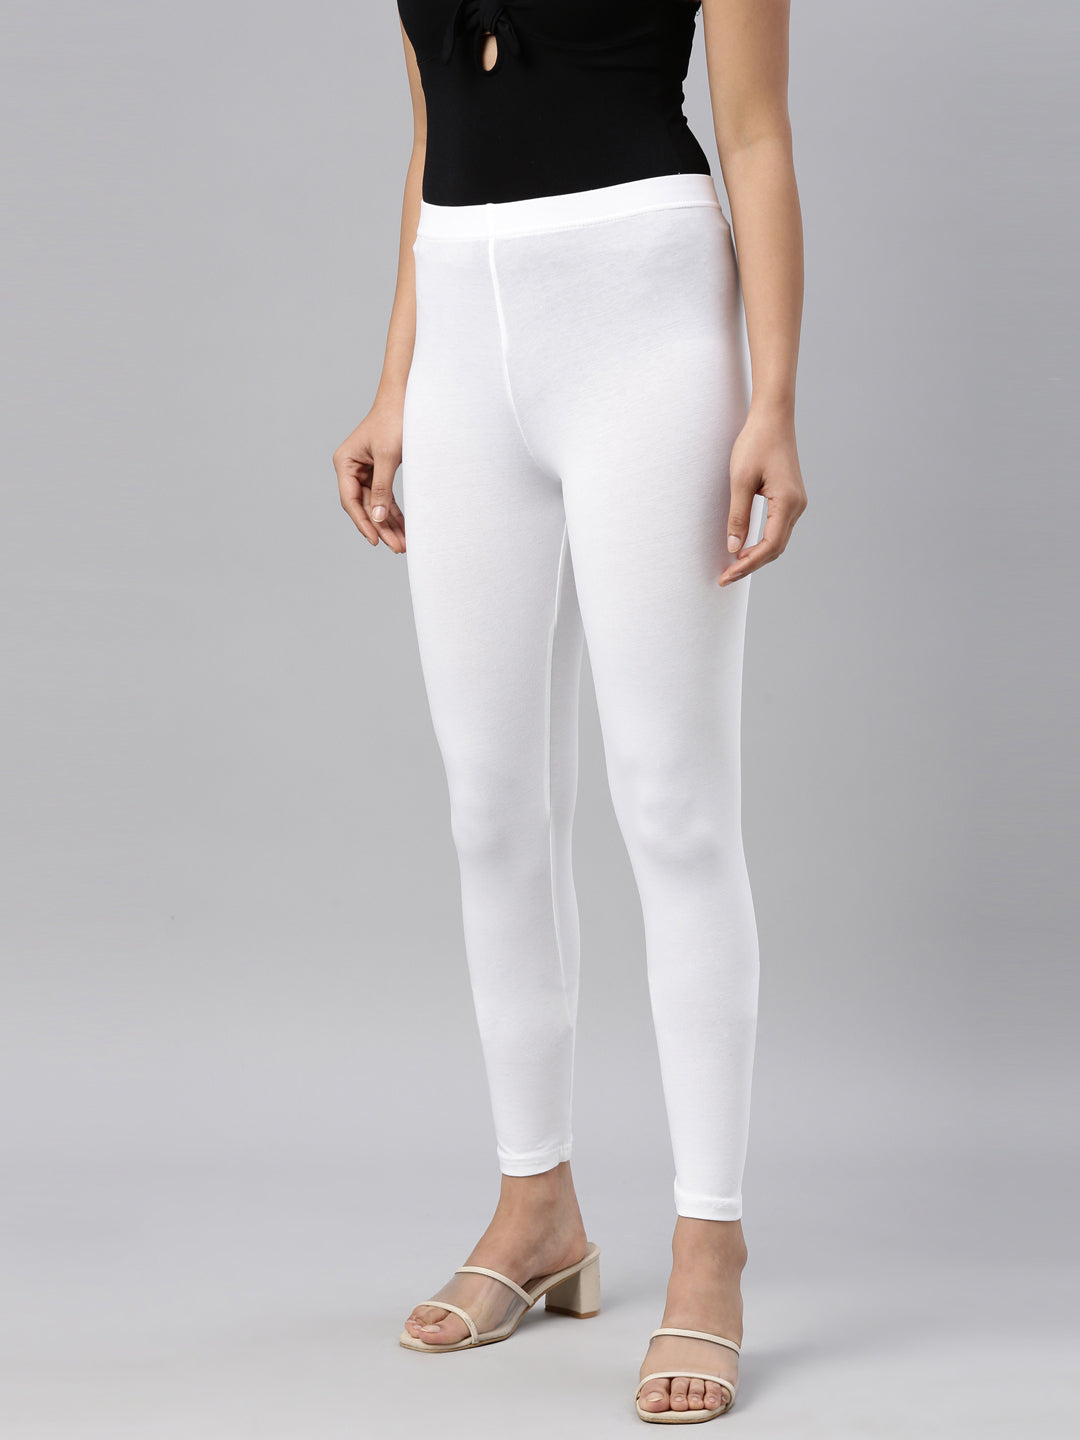 Best 15 White Leggings Outfit Ideas for Women - FMag.com-anthinhphatland.vn